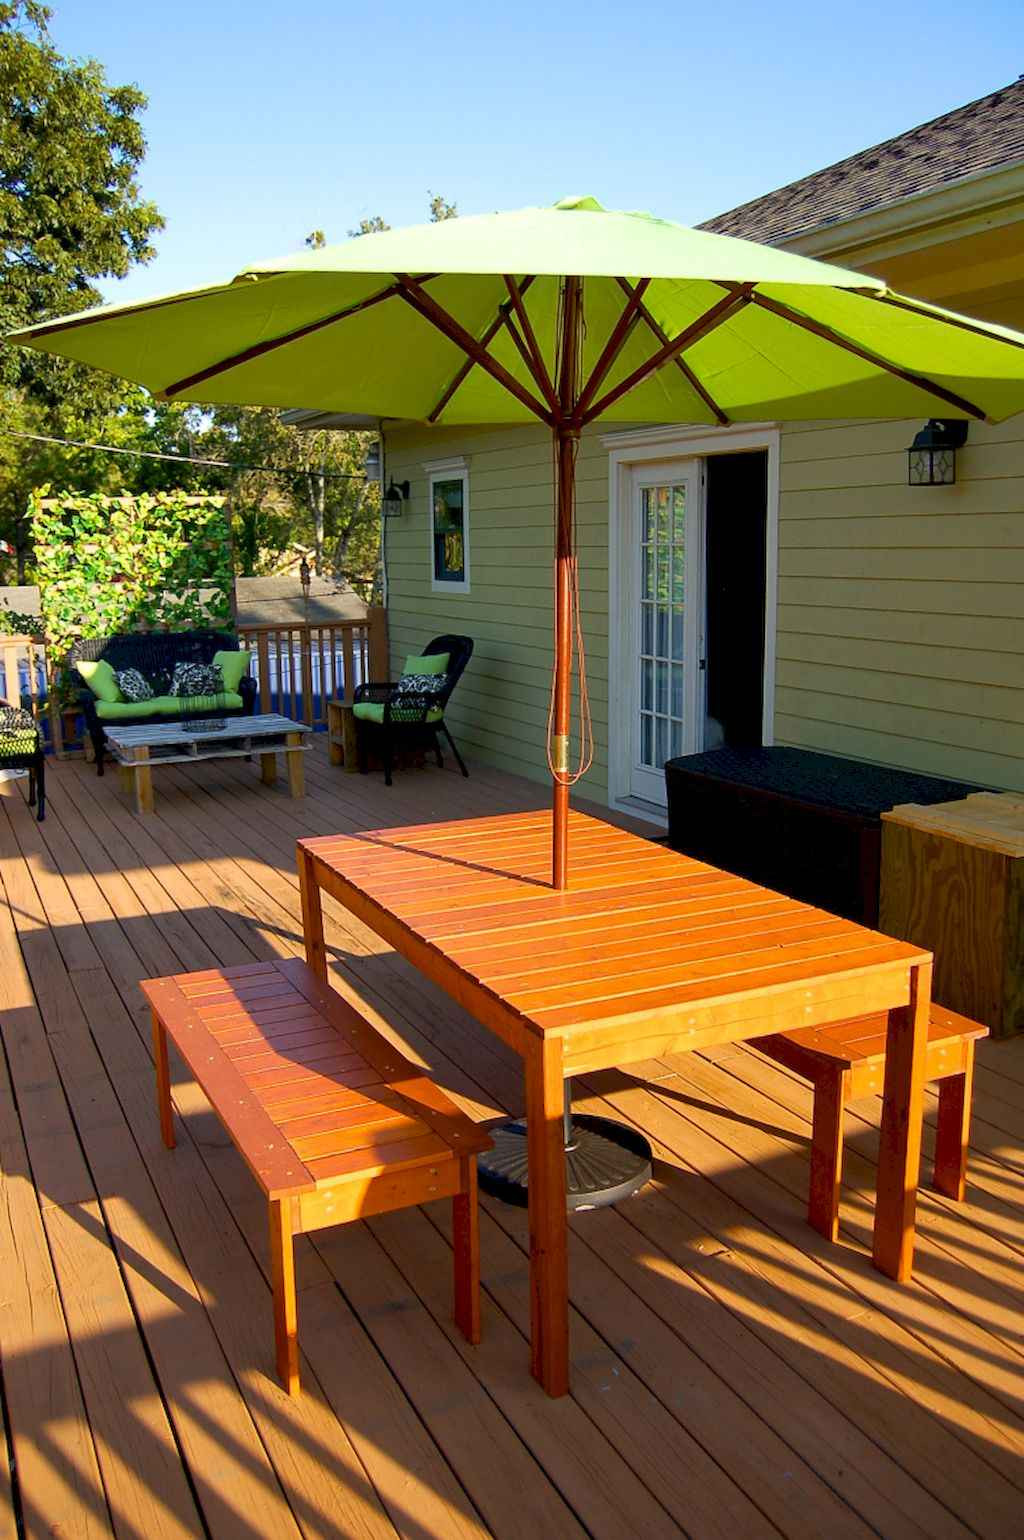 DIY Outdoor Table Top Ideas
 55 Rustic Outdoor Patio Table Design Ideas DIY on a Bud